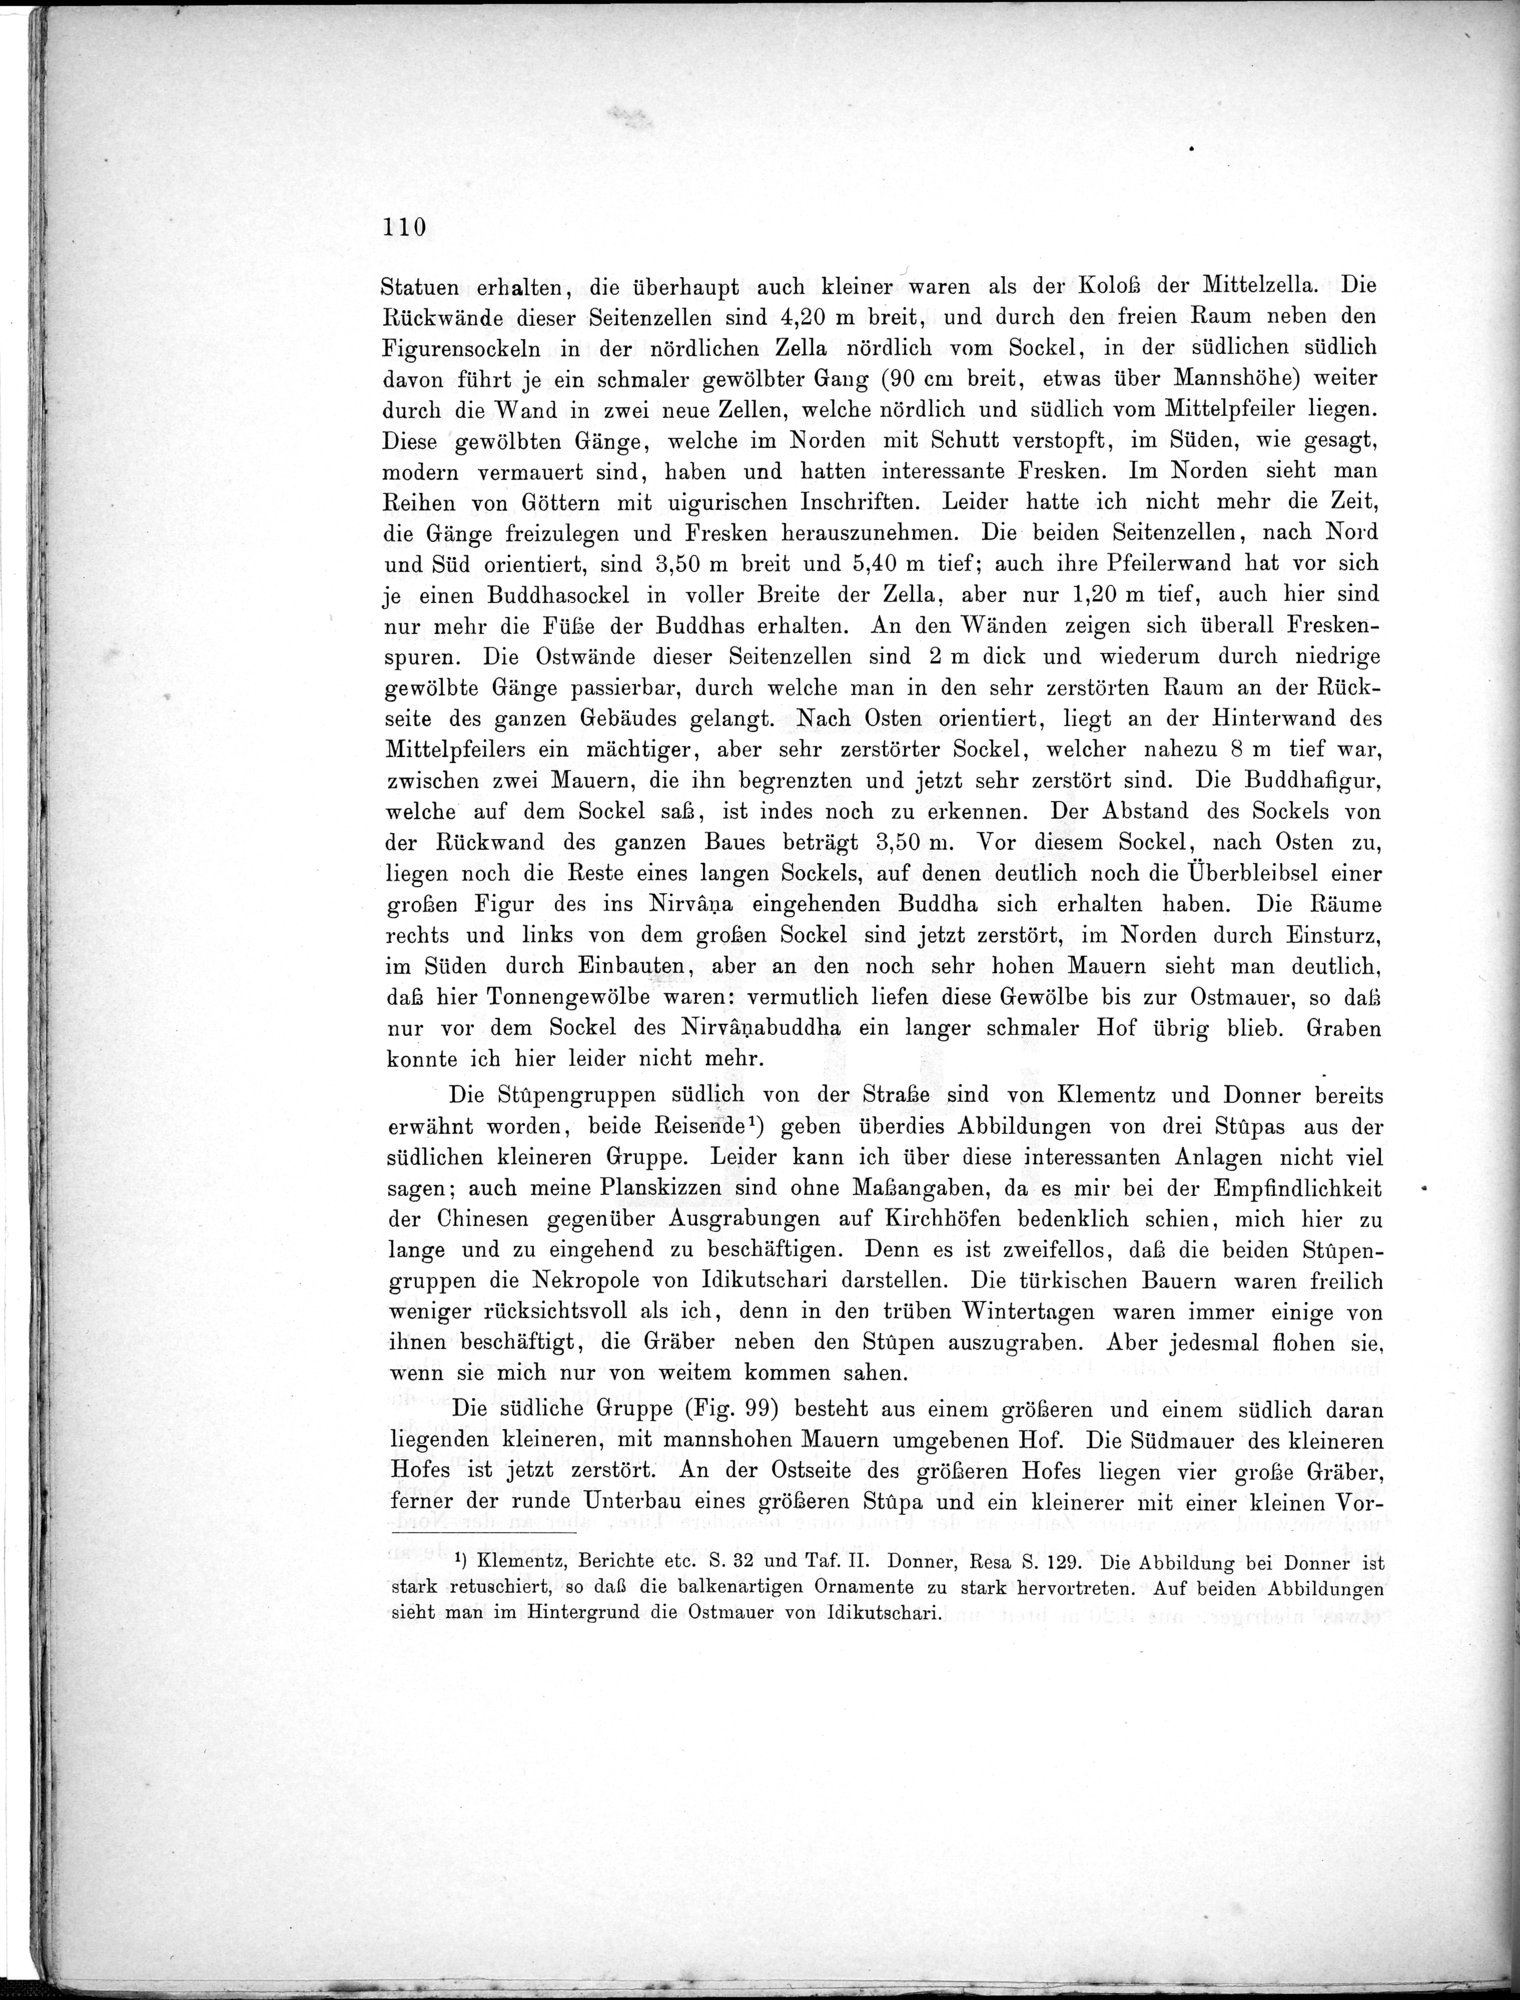 Bericht über archäologische Arbeiten in Idikutschari und Umgebung im Winter 1902-1903 : vol.1 / Page 120 (Grayscale High Resolution Image)